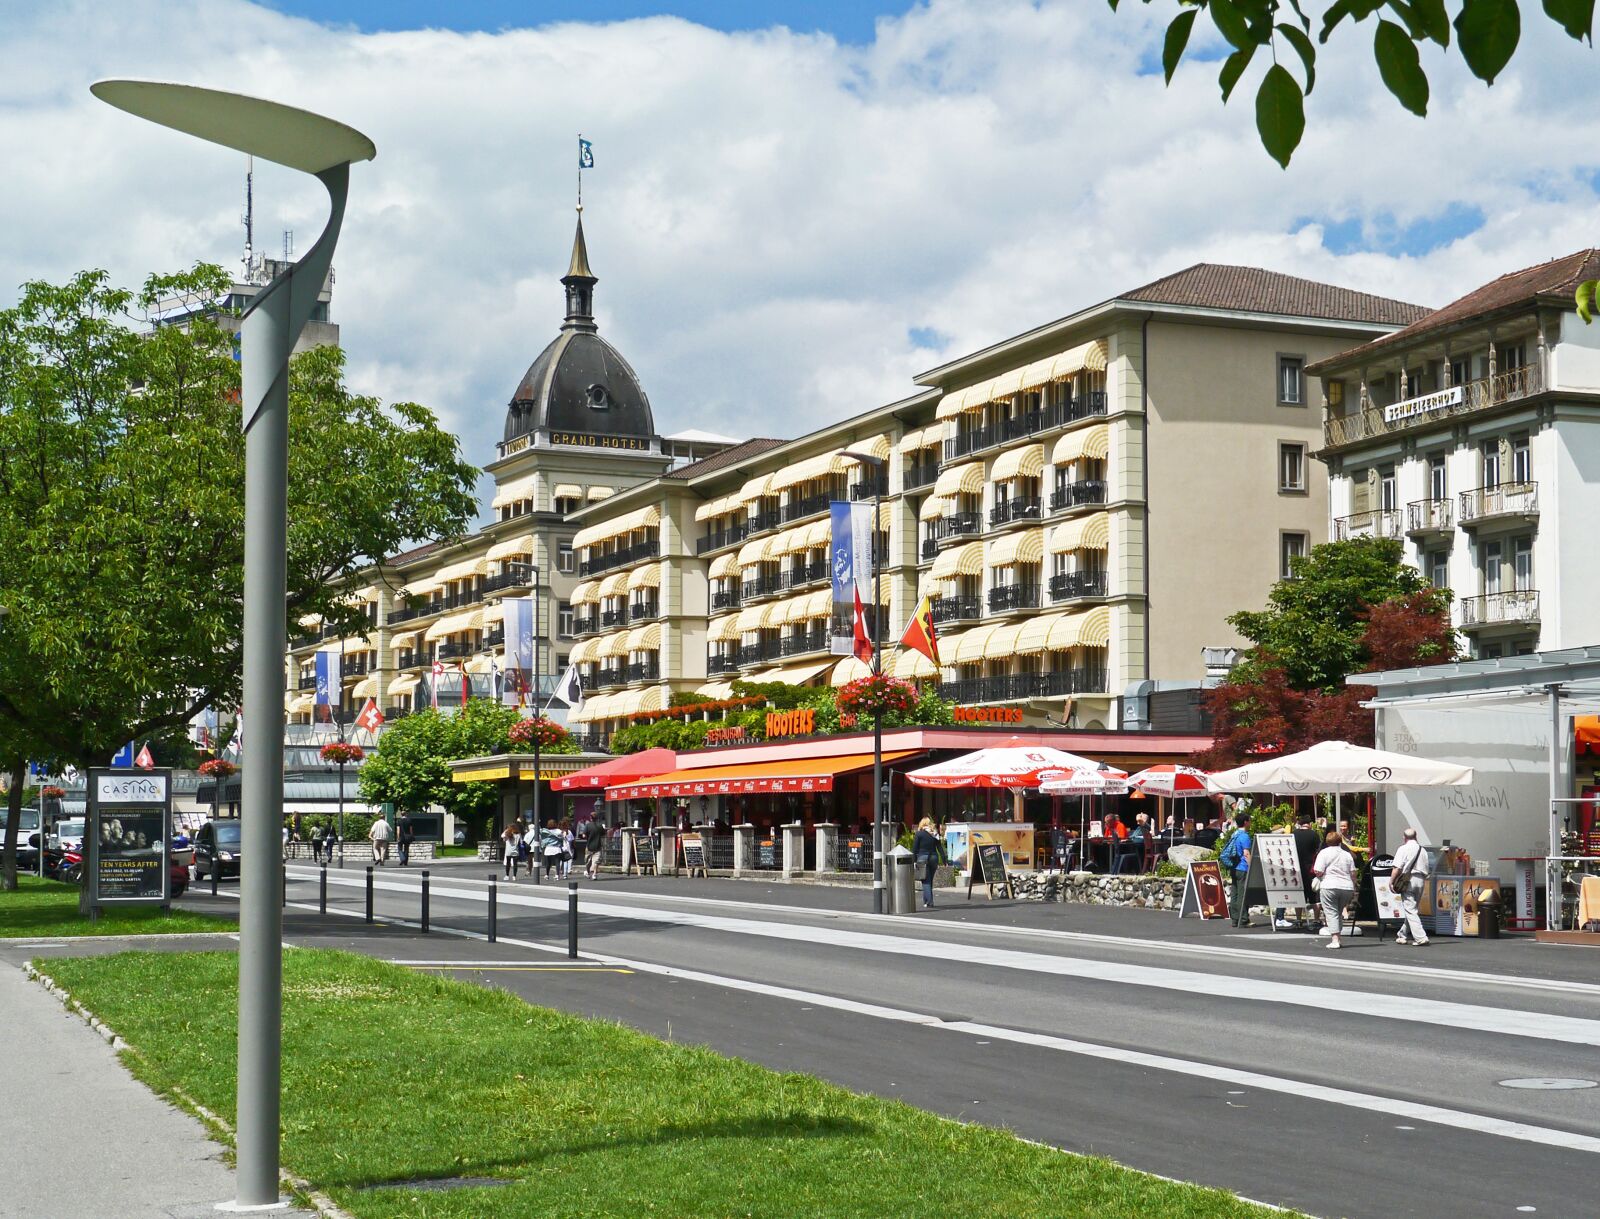 Panasonic Lumix DMC-G3 sample photo. Switzerland, interlaken, grand hotel photography